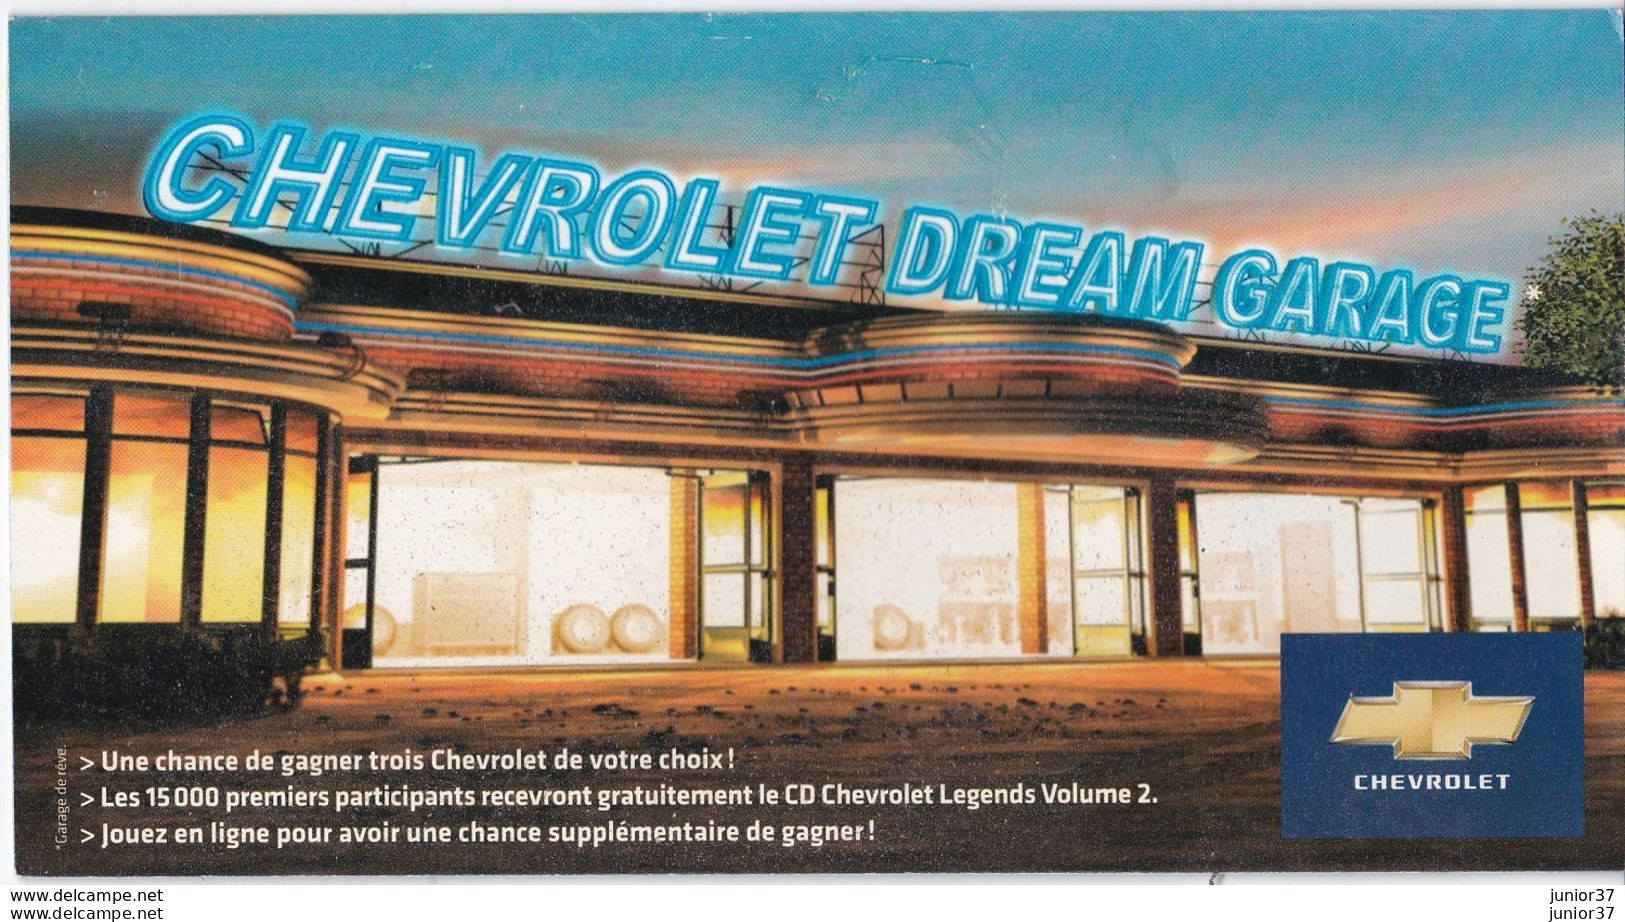 Dépliant Catalogue Chevrolet Dream Garage,Matiz,Avao, Lacetti,Nubira Sw,HRS,Epica,Captiva 2008 - Publicités